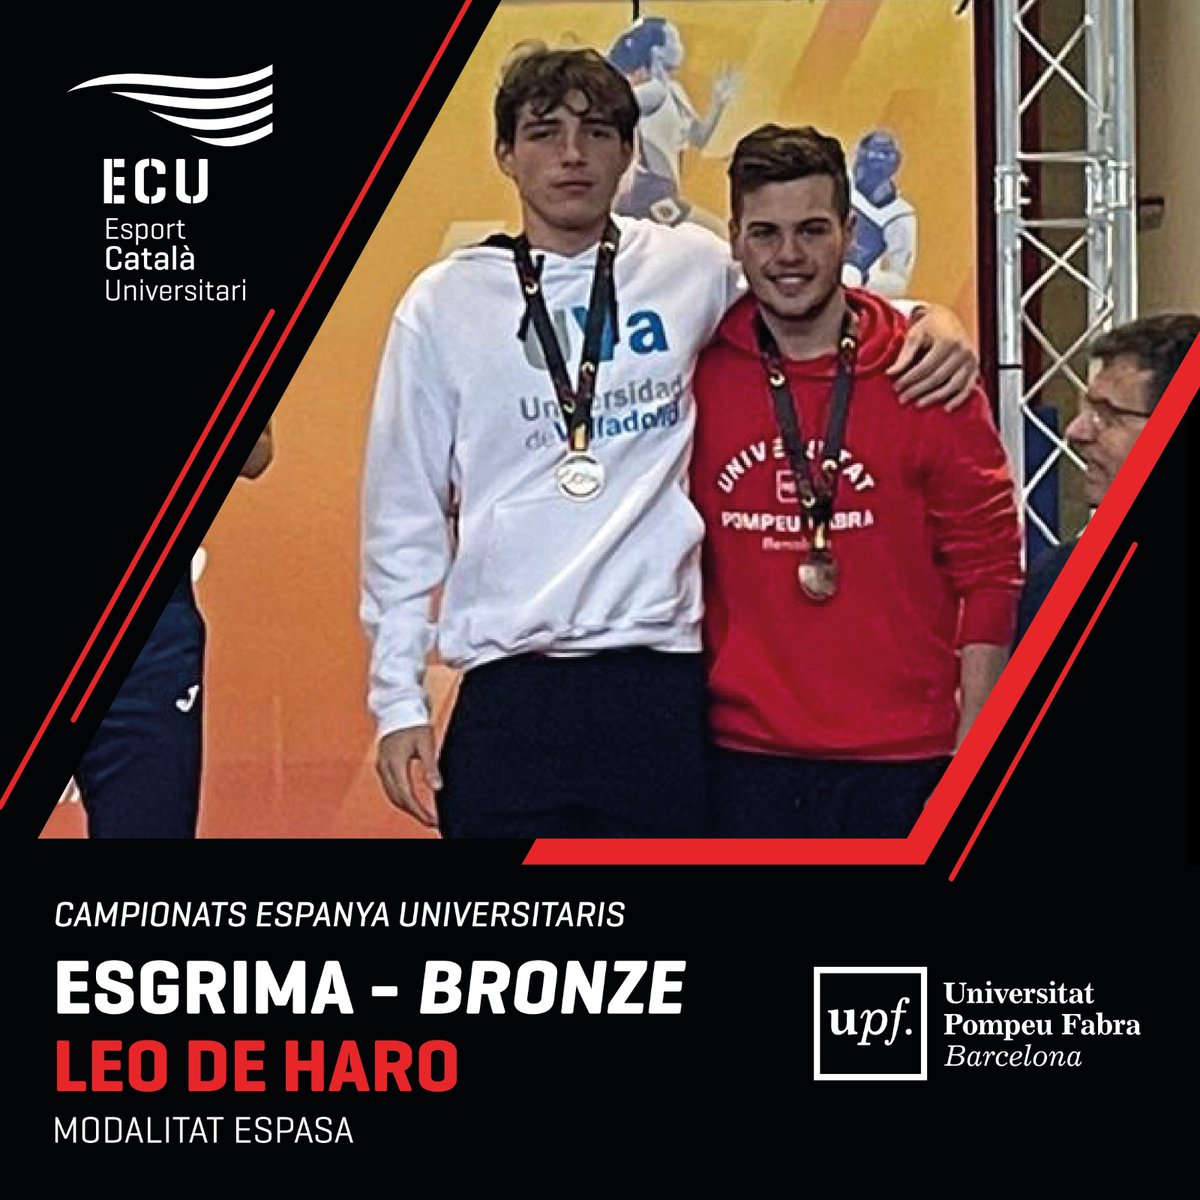 #CEU24 I Donem l'enhorabona al Leo De Haro, medallista del CEU d'esgrima en modalitat d'espasa! 👏

🥉 Bronze
📚 Universitat Pompeu Fabra

#EsportUniversitari #Esportcat @upfbarcelona @esportsupf